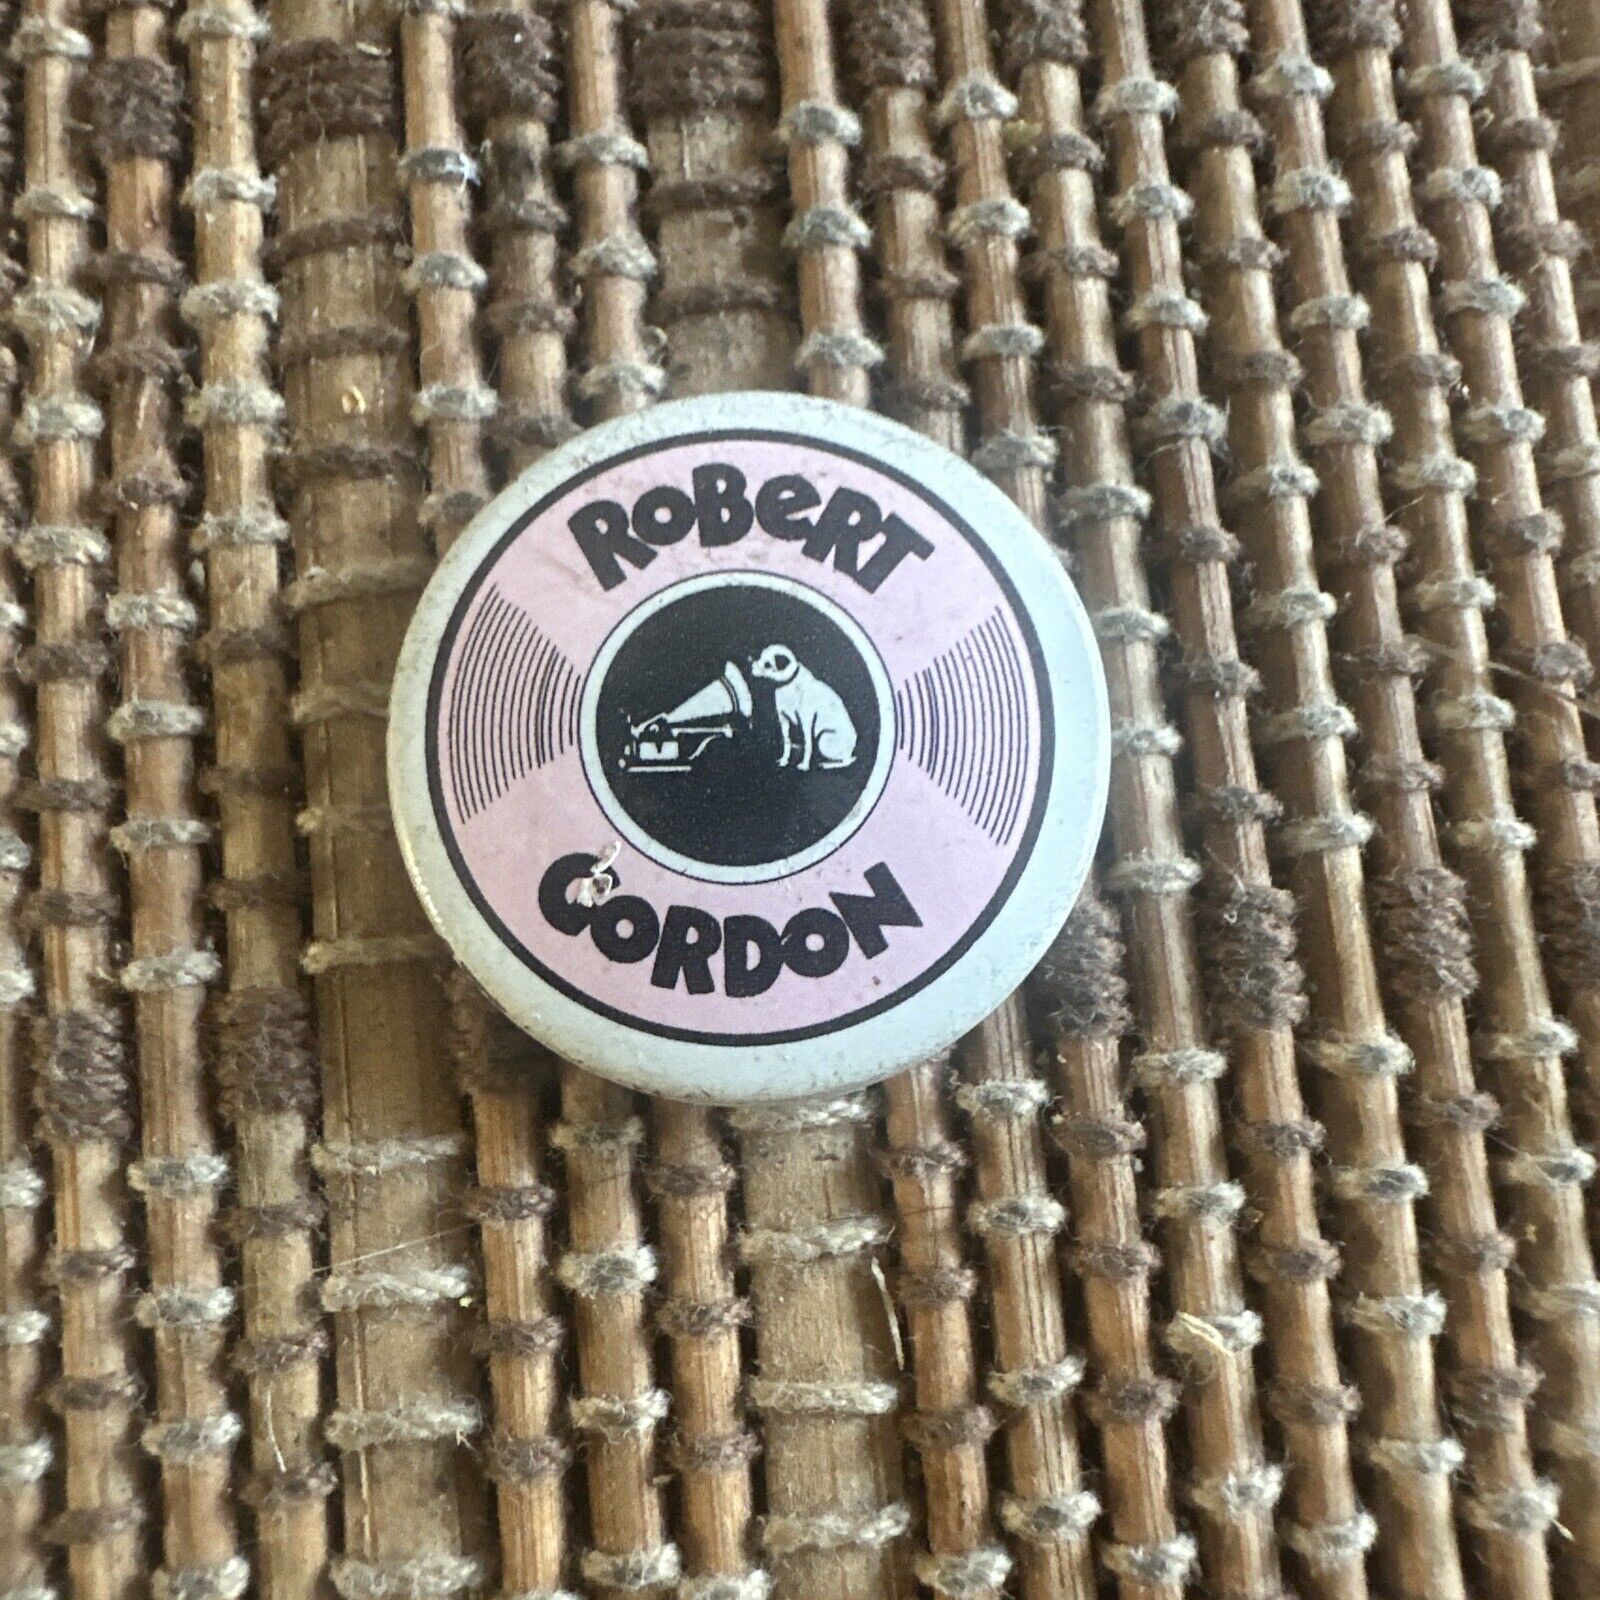 RARE Vintage 1979 ROBERT GORDON promo button pin badge rockabilly RCA dog 1\